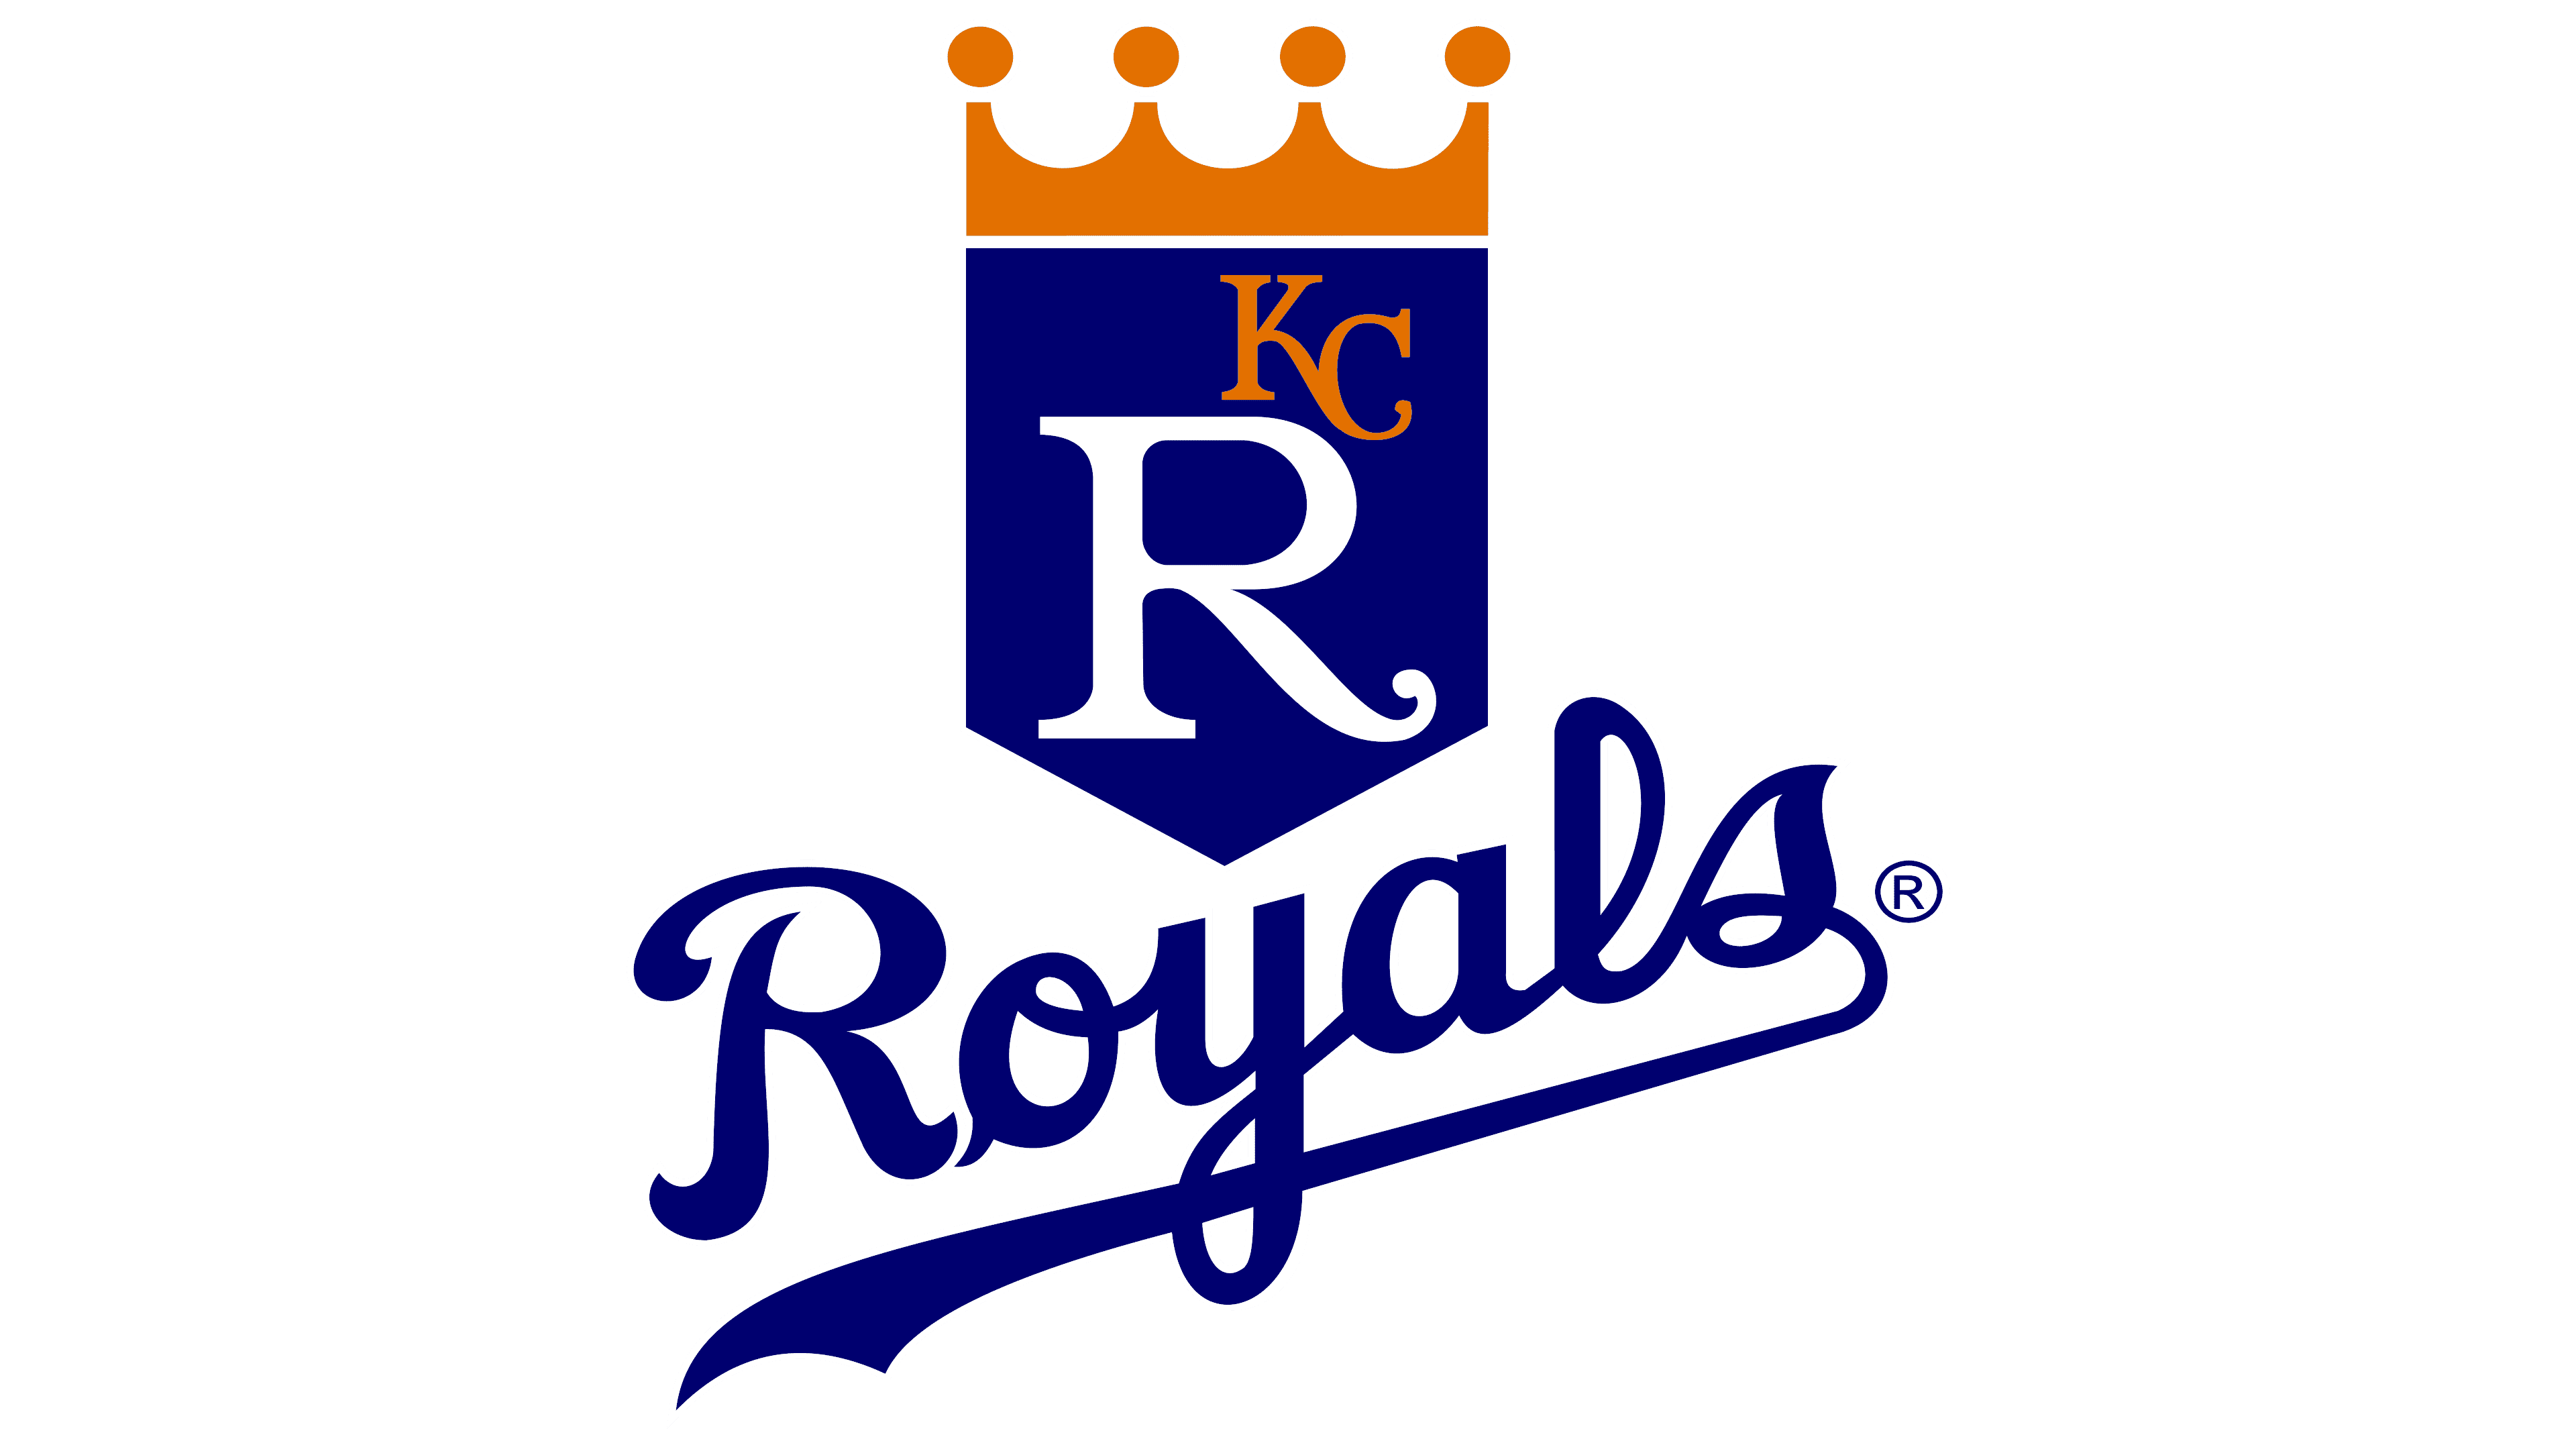 Kansas City Royals History